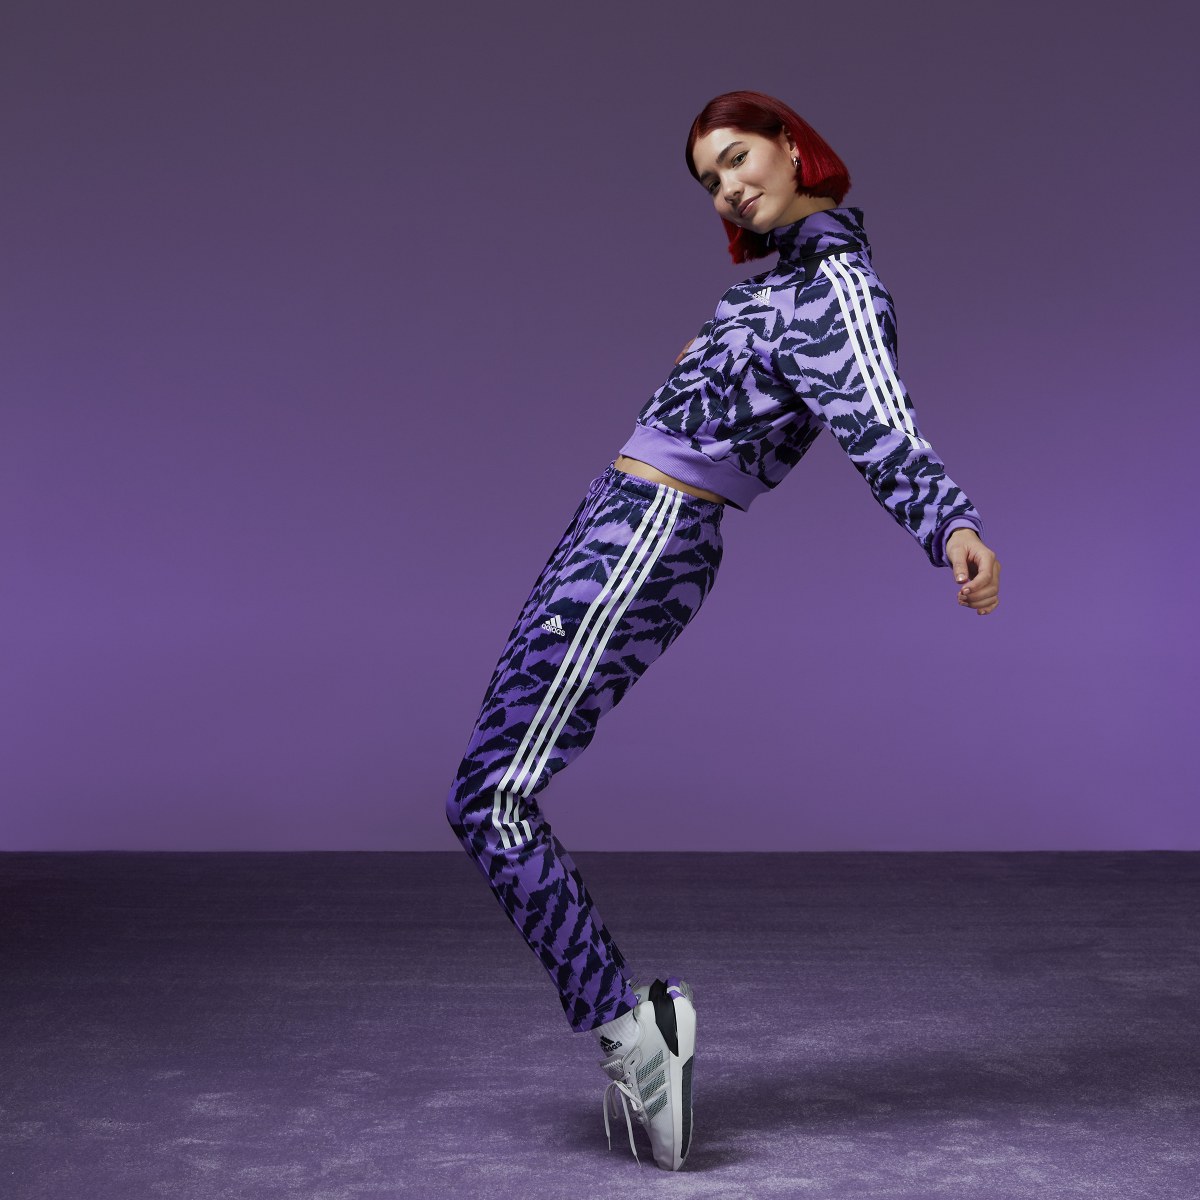 Adidas Tiro Suit Up Lifestyle Track Pant. 7